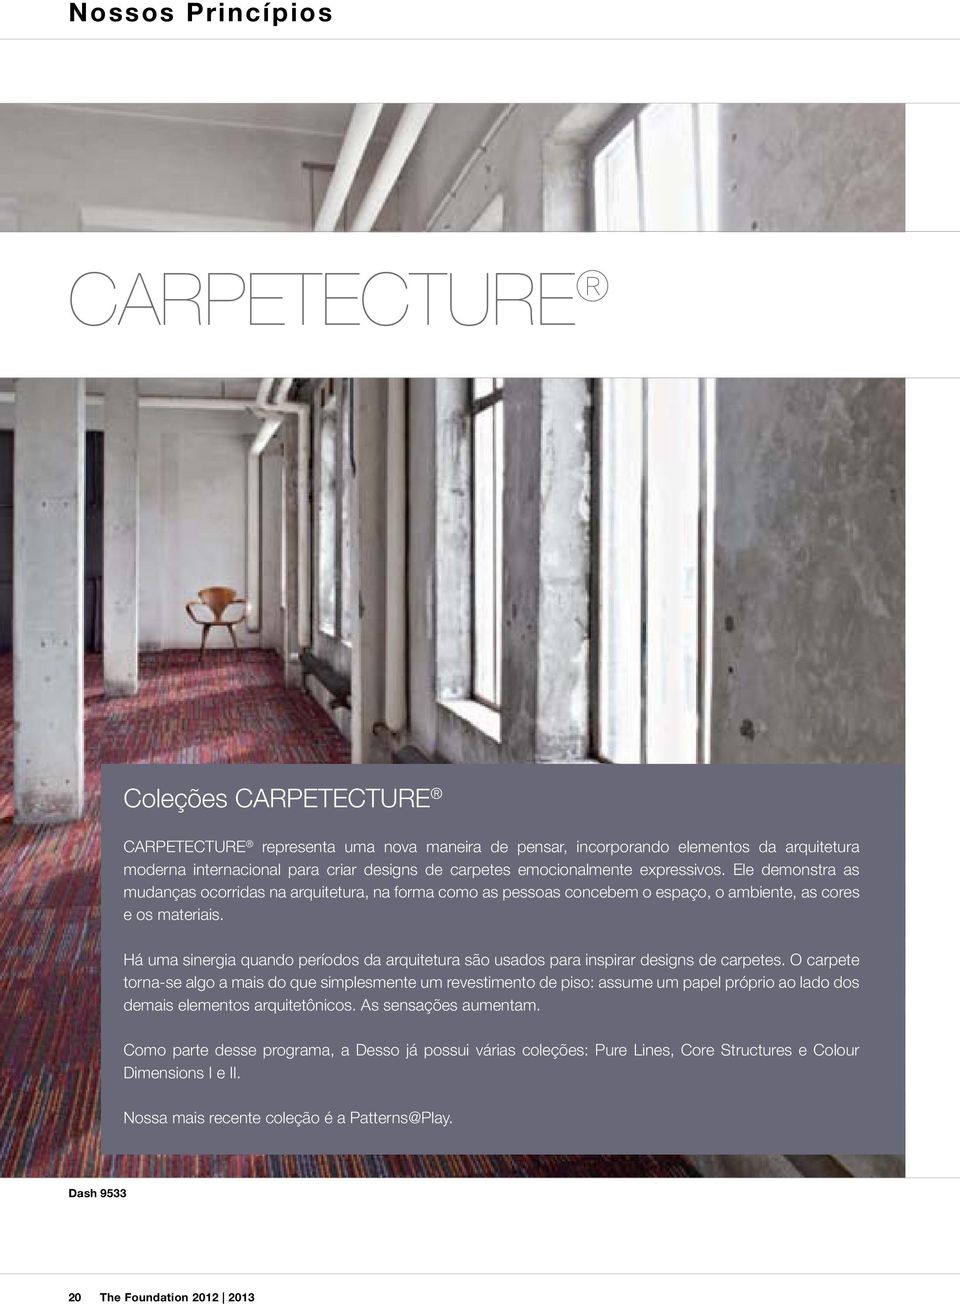 Há uma sinergia quando períodos da arquitetura são usados para inspirar designs de carpetes.